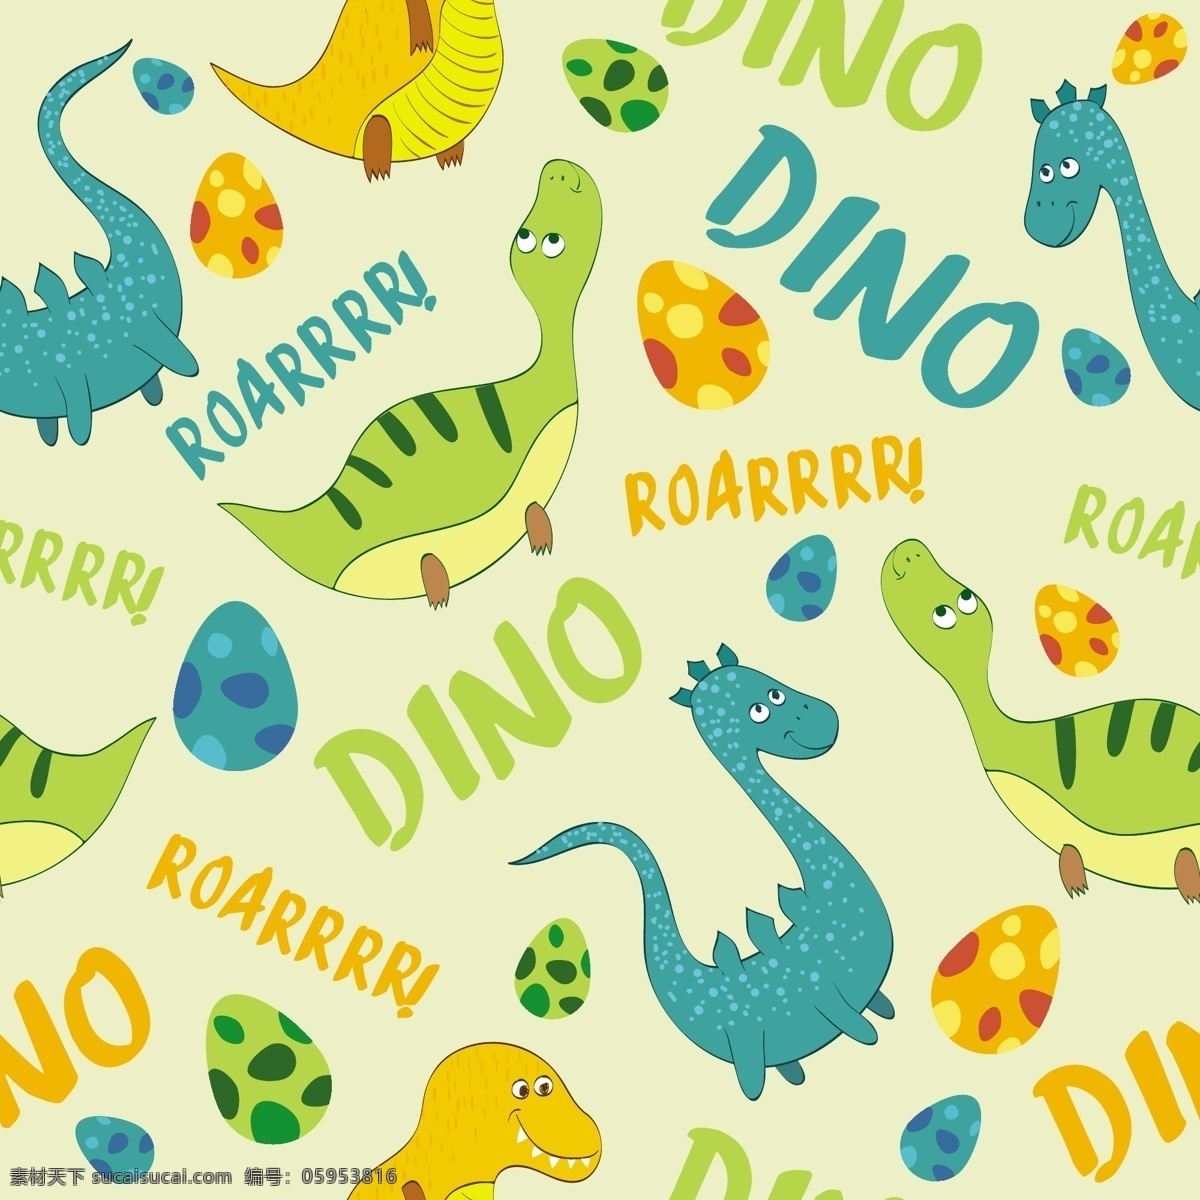 恐龙矢量素材 动物 恐龙 恐龙图案 矢量素材